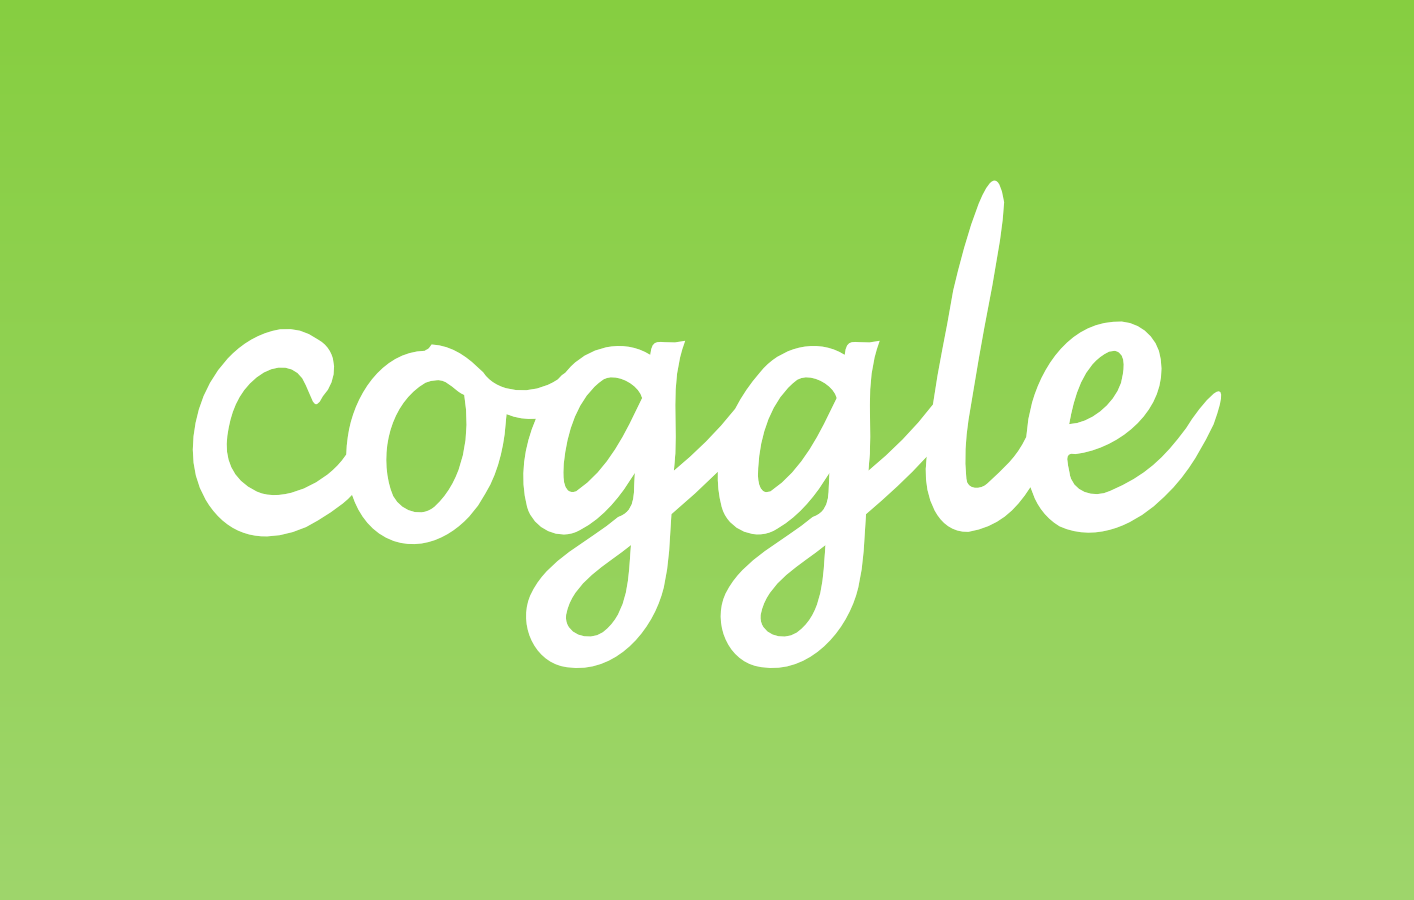 coggle